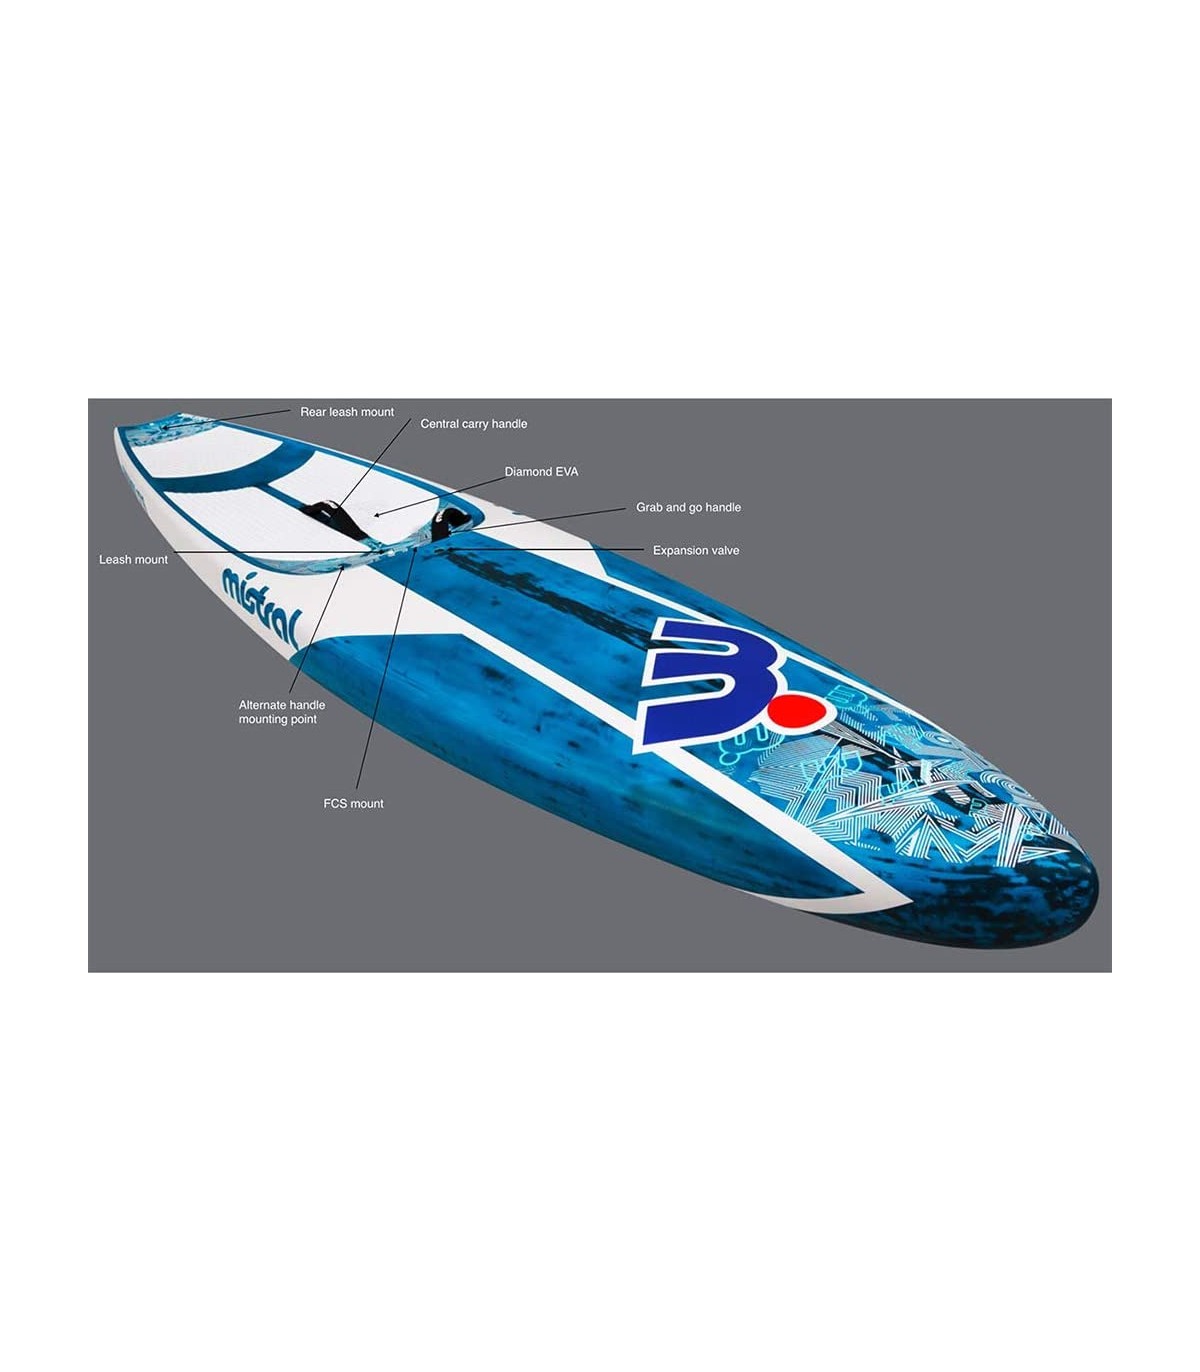 OFERTA - Tabla de paddle surf rígida Equinox 12'6 Carbono